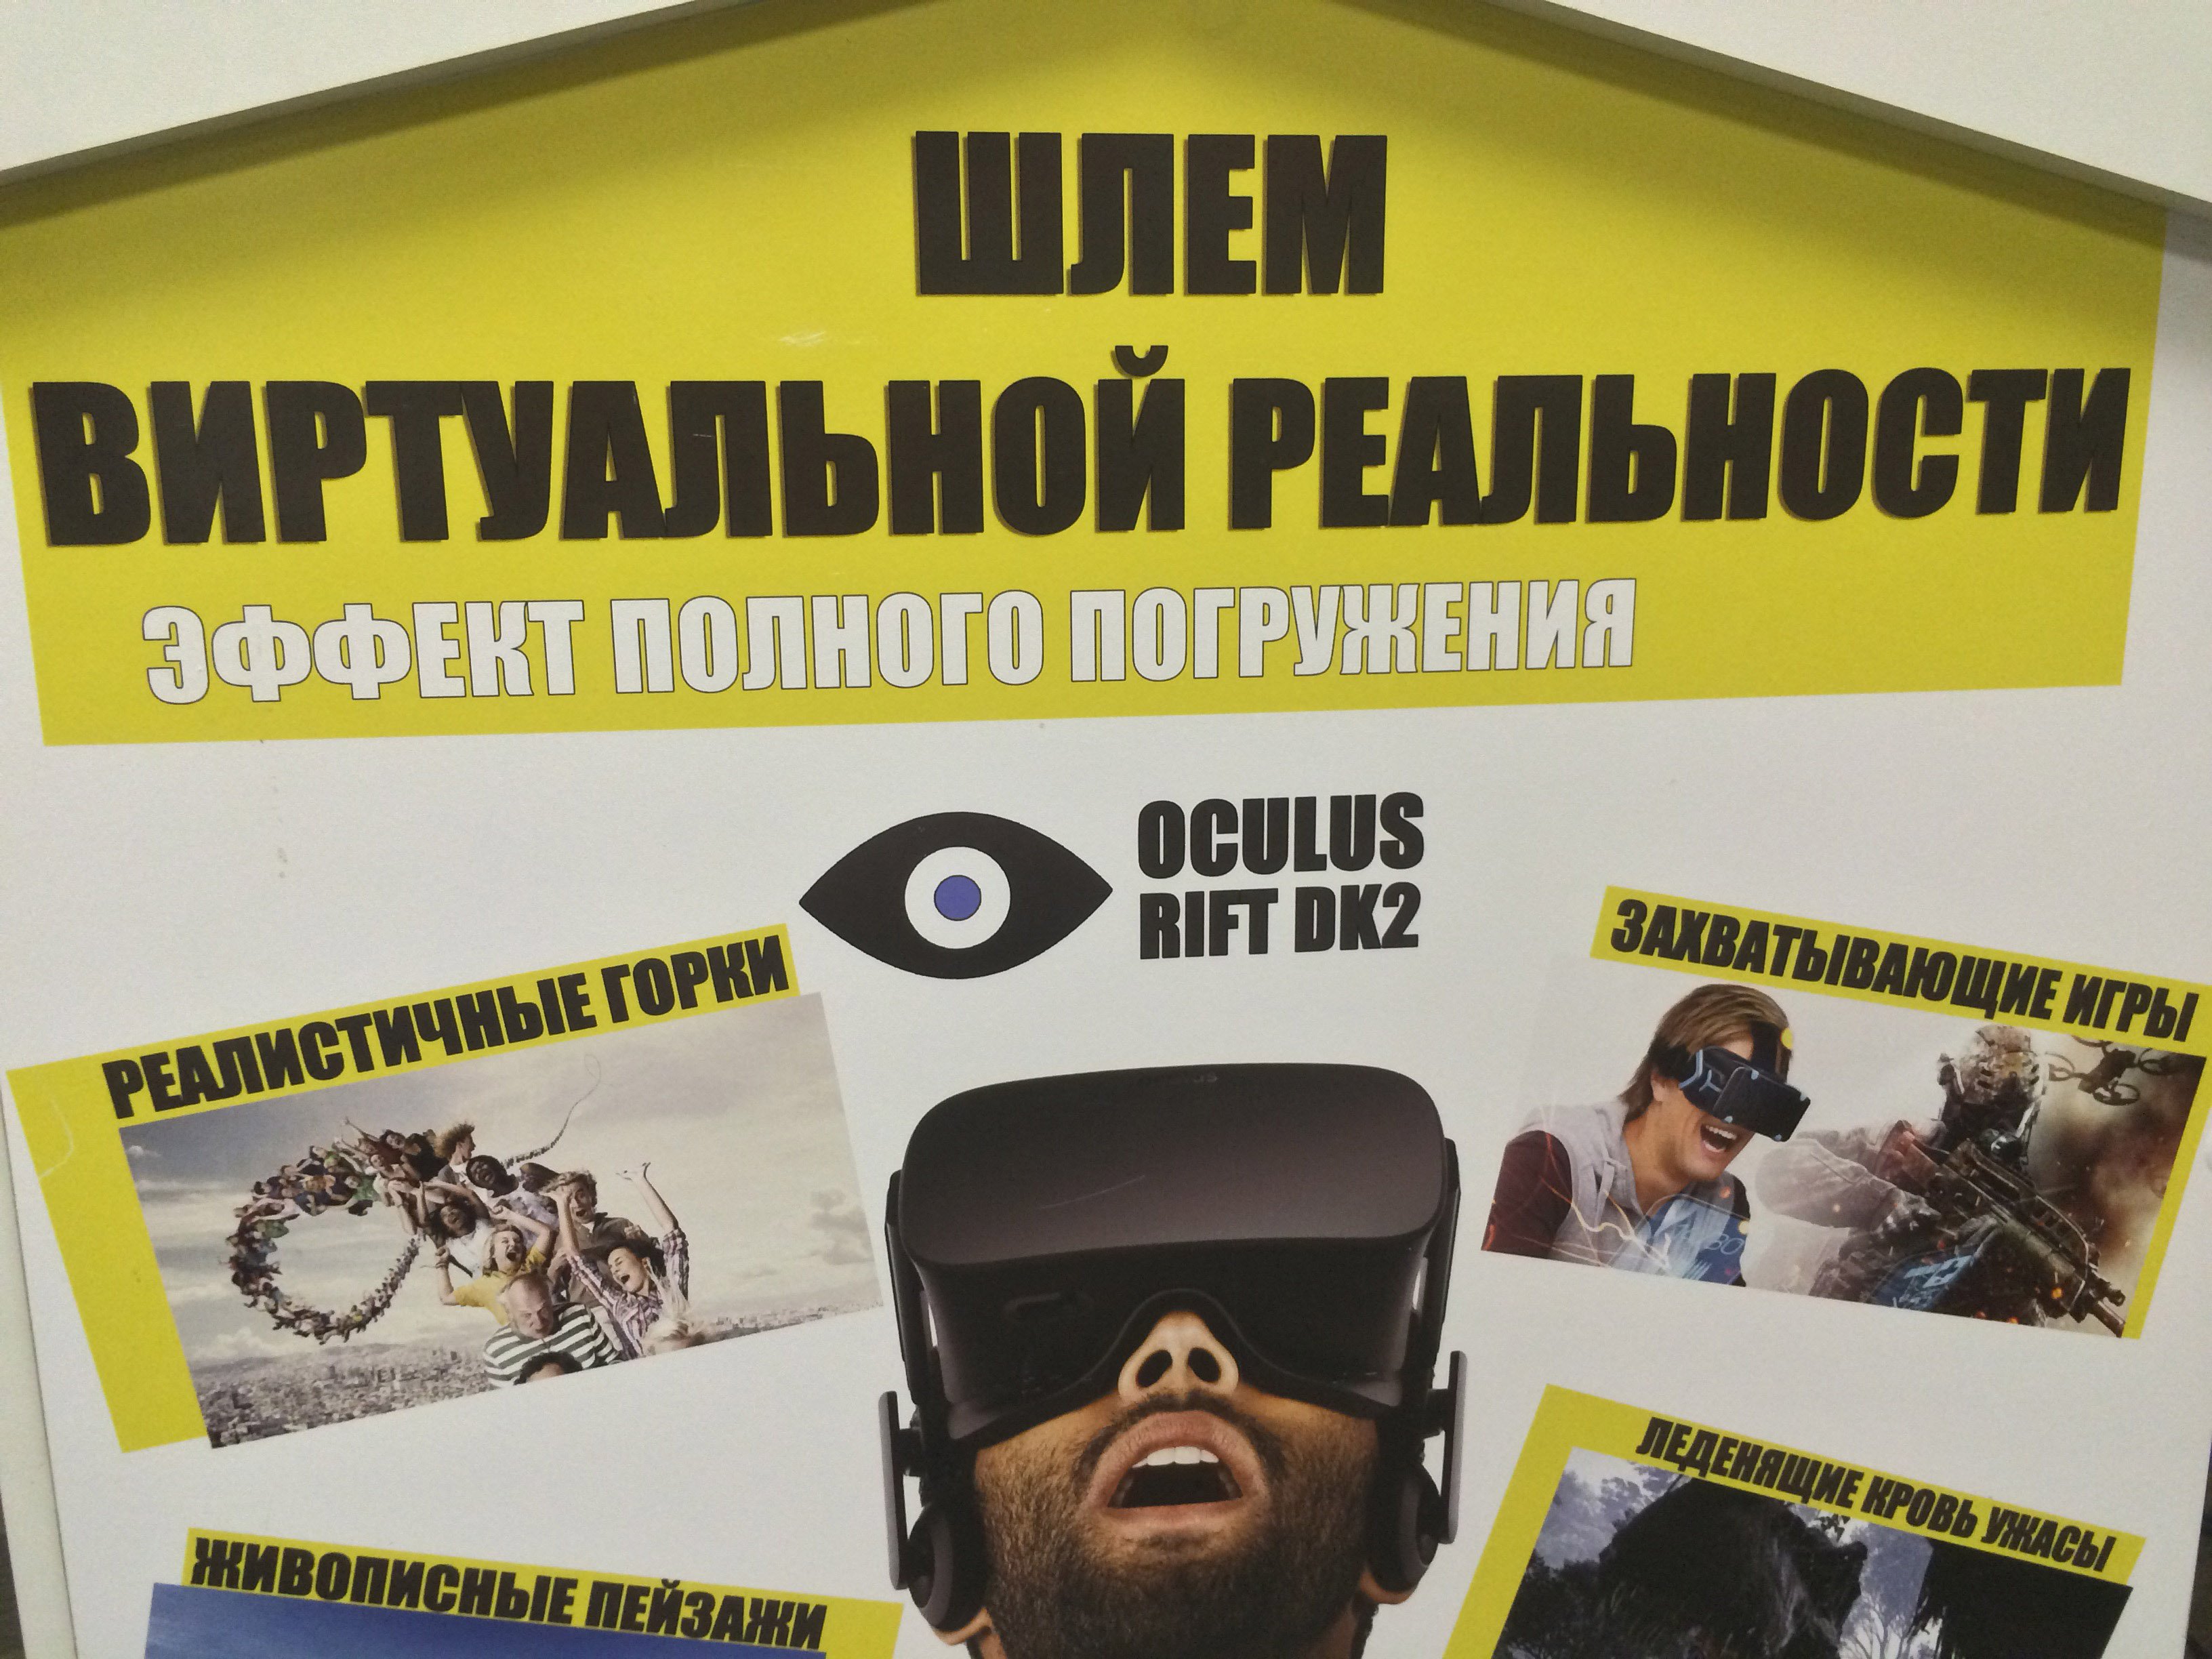 Теперь в нашем офисе на проспекте мира Вы так же можете испытать на себе виртуальную реальность!